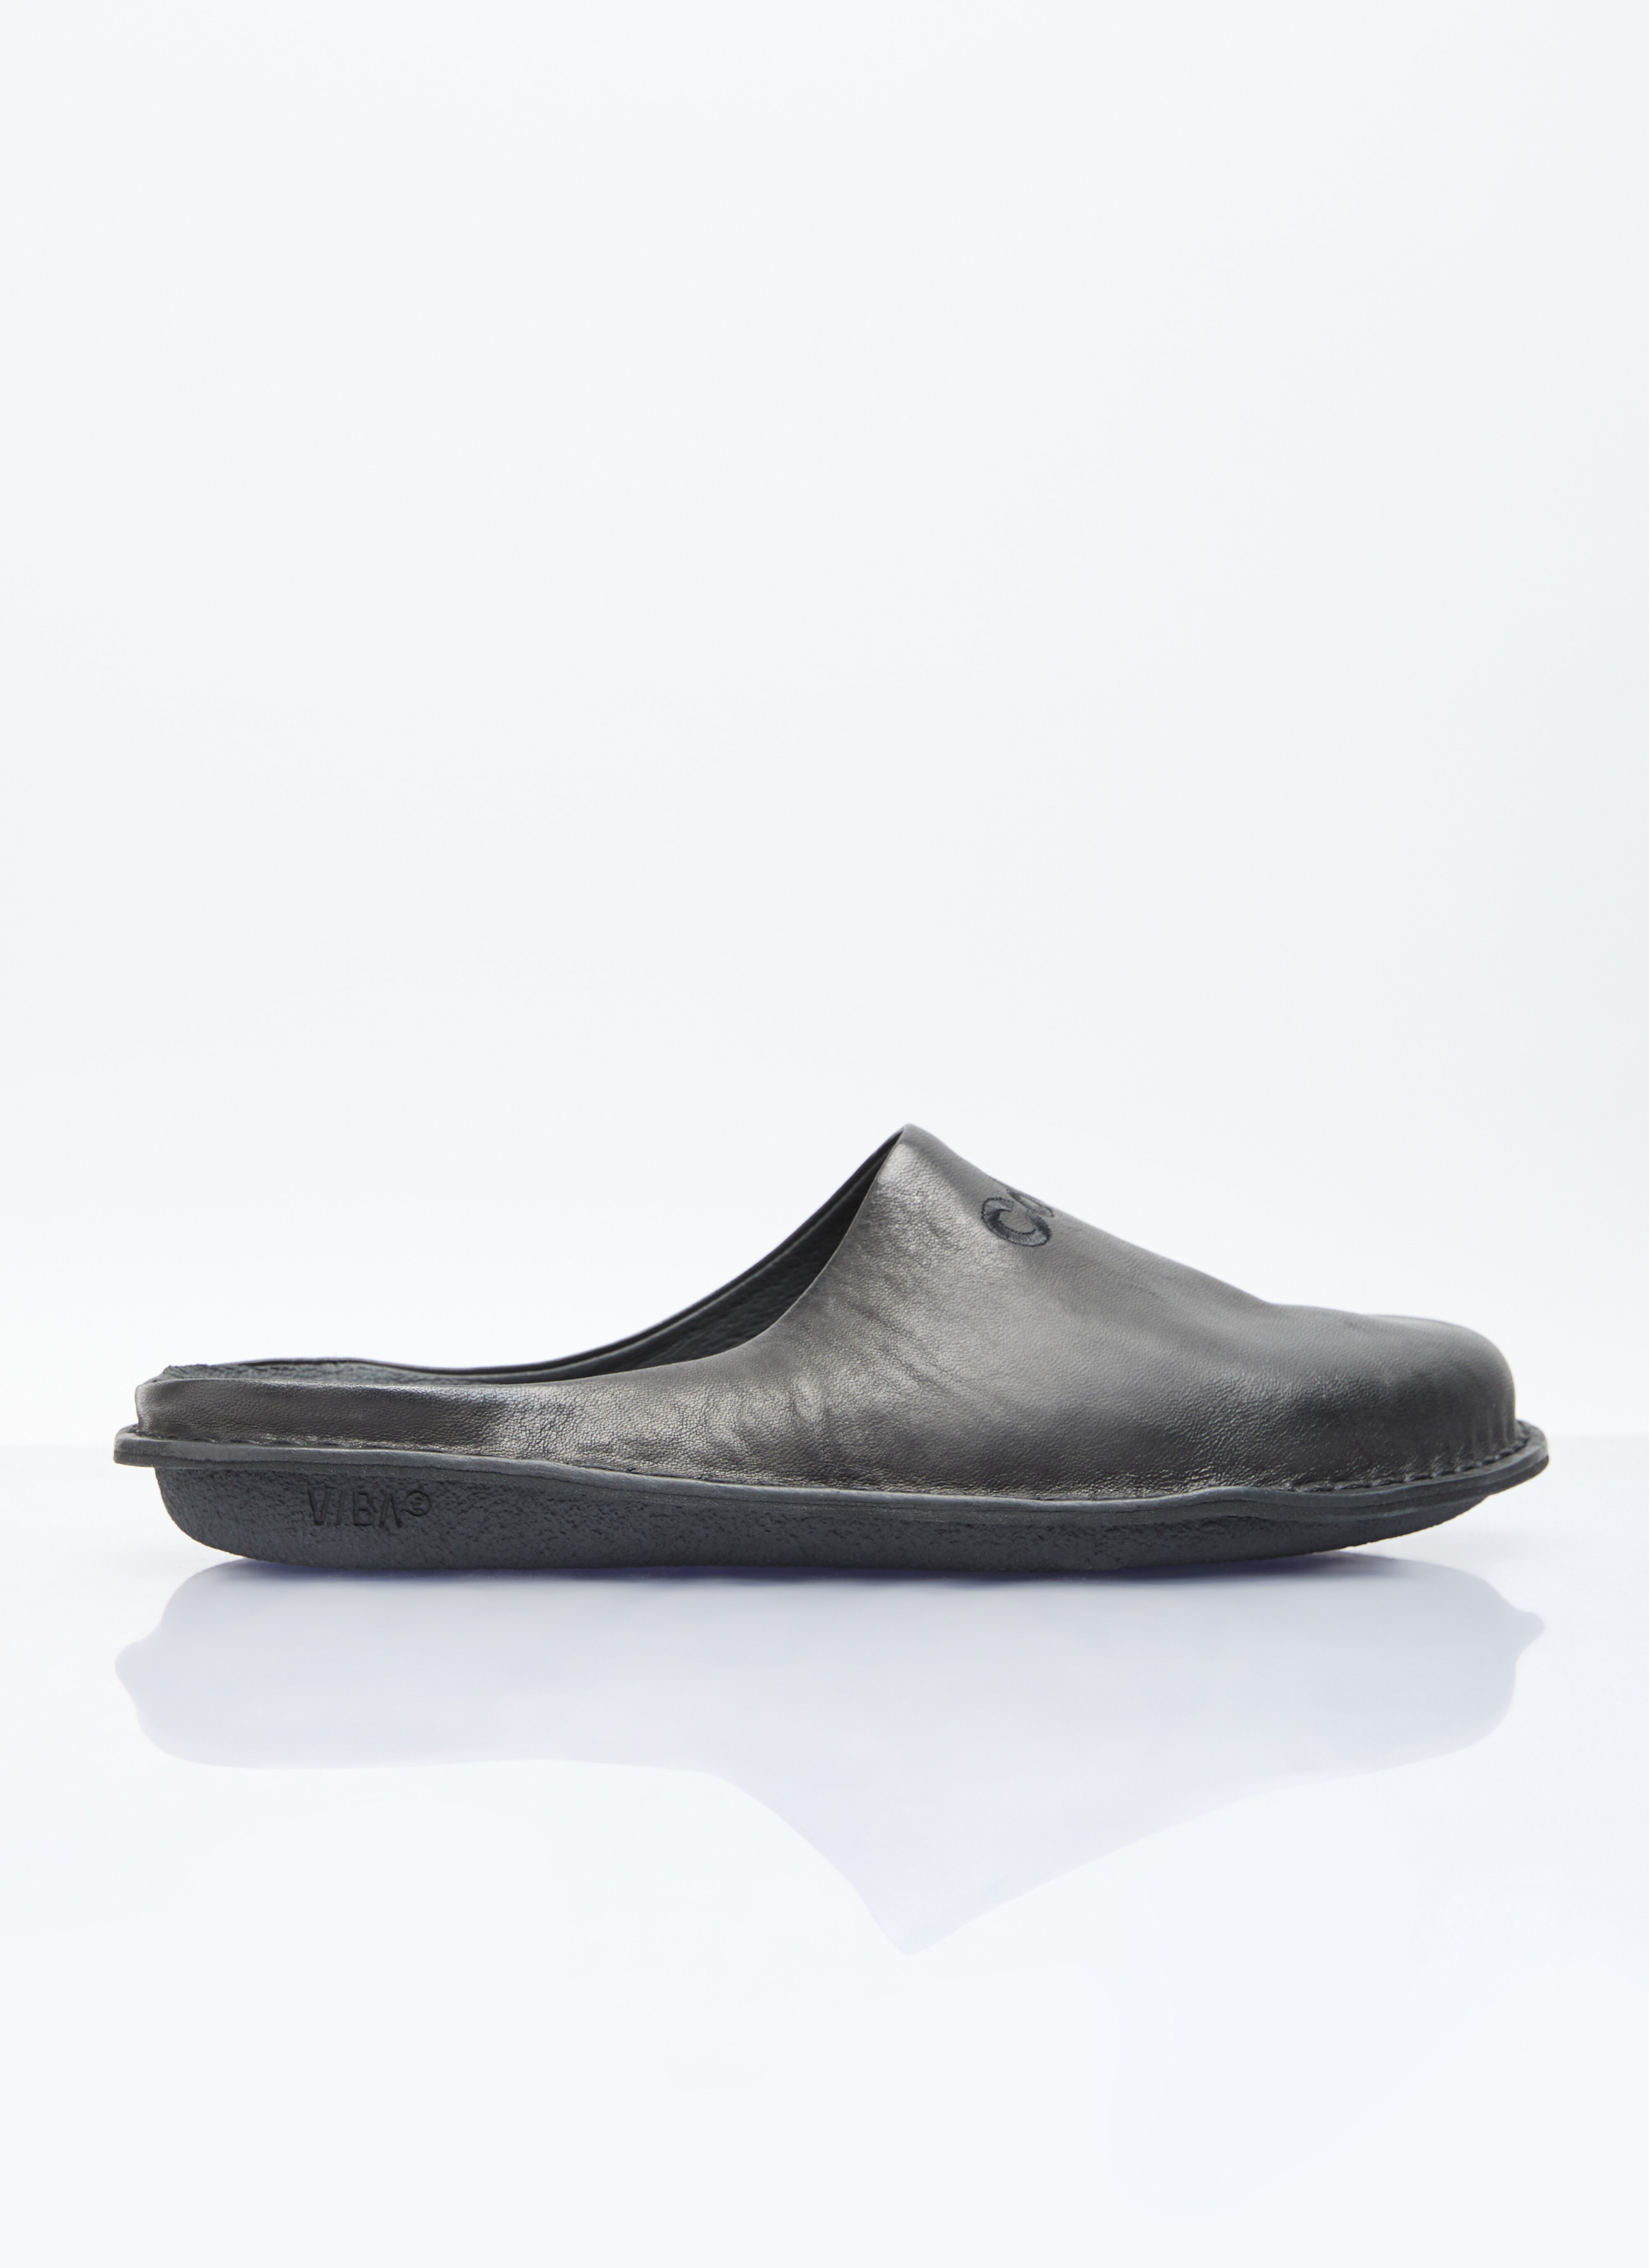 MM6 Maison Margiela Leather Slip-On Shoes White mmm0155017